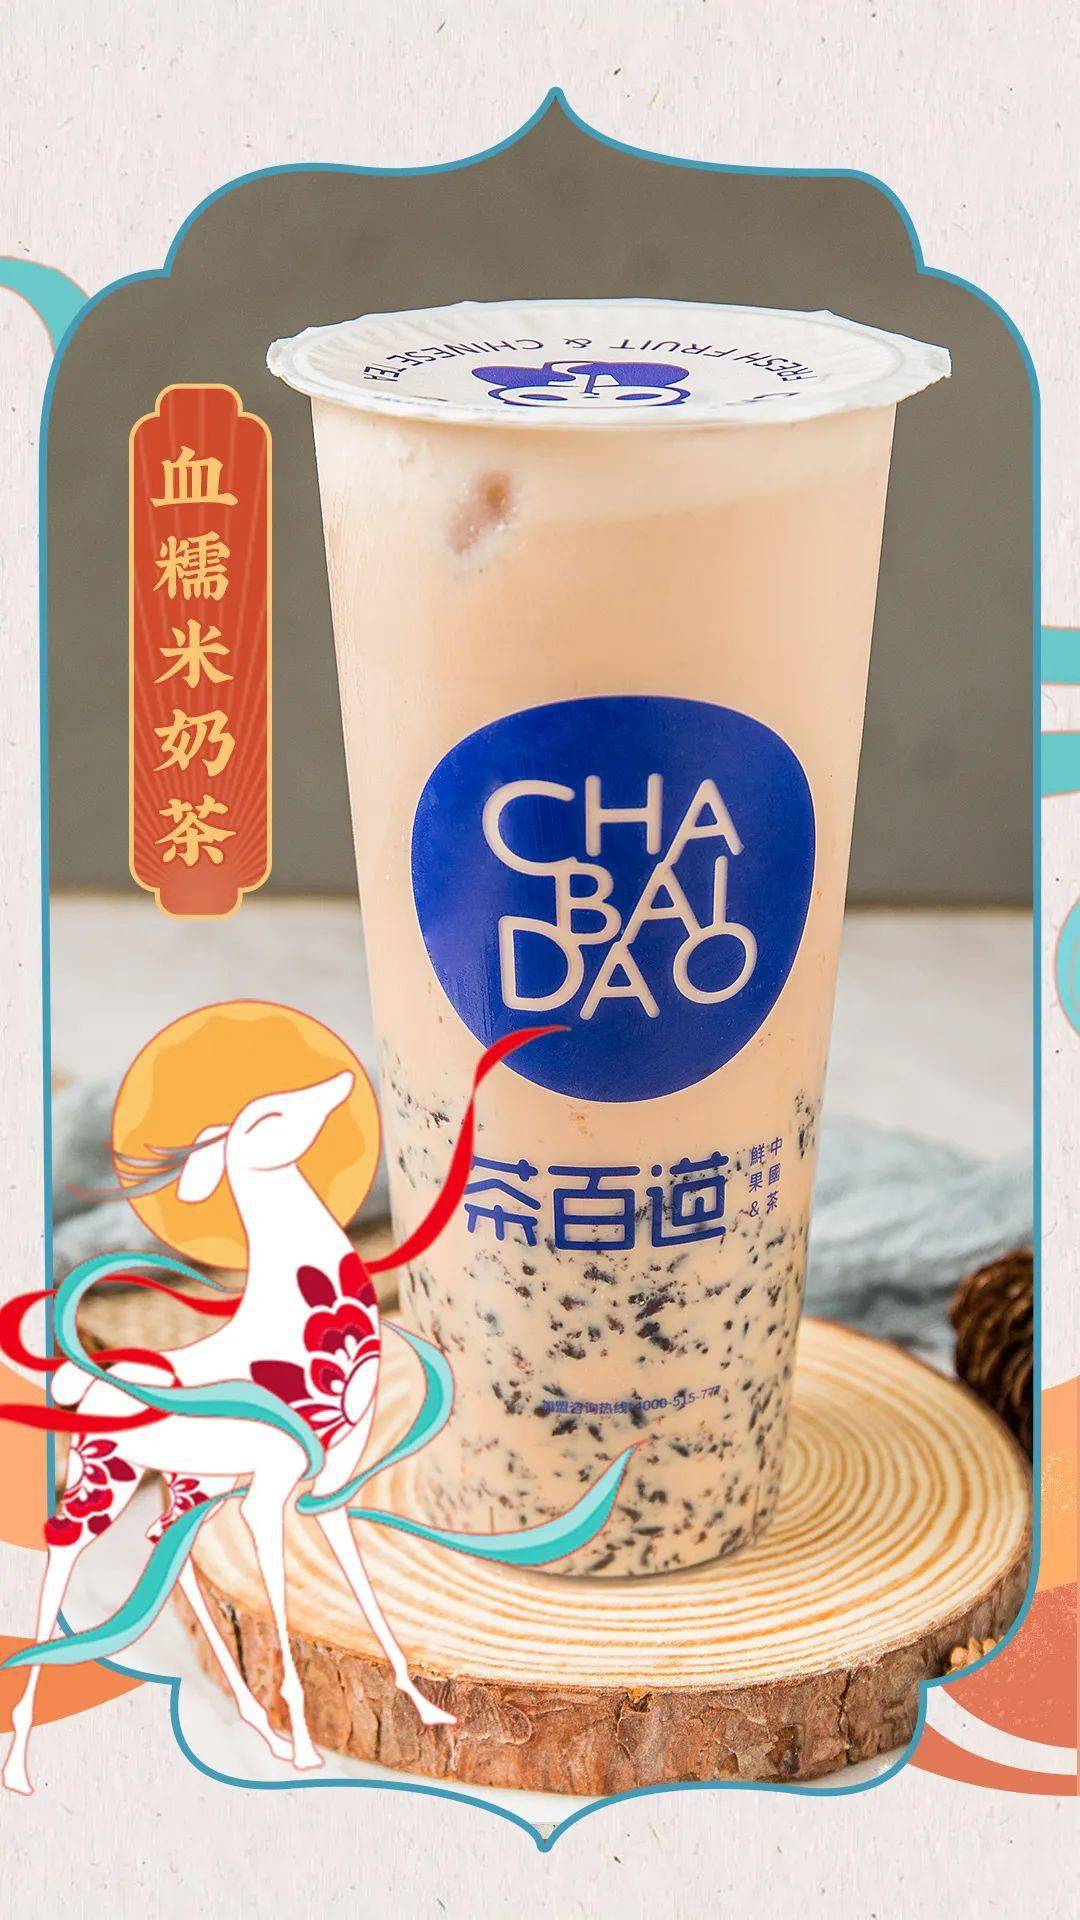 茶百道x敦煌博物馆,这款联名奶茶即将霸占你的整个秋冬!